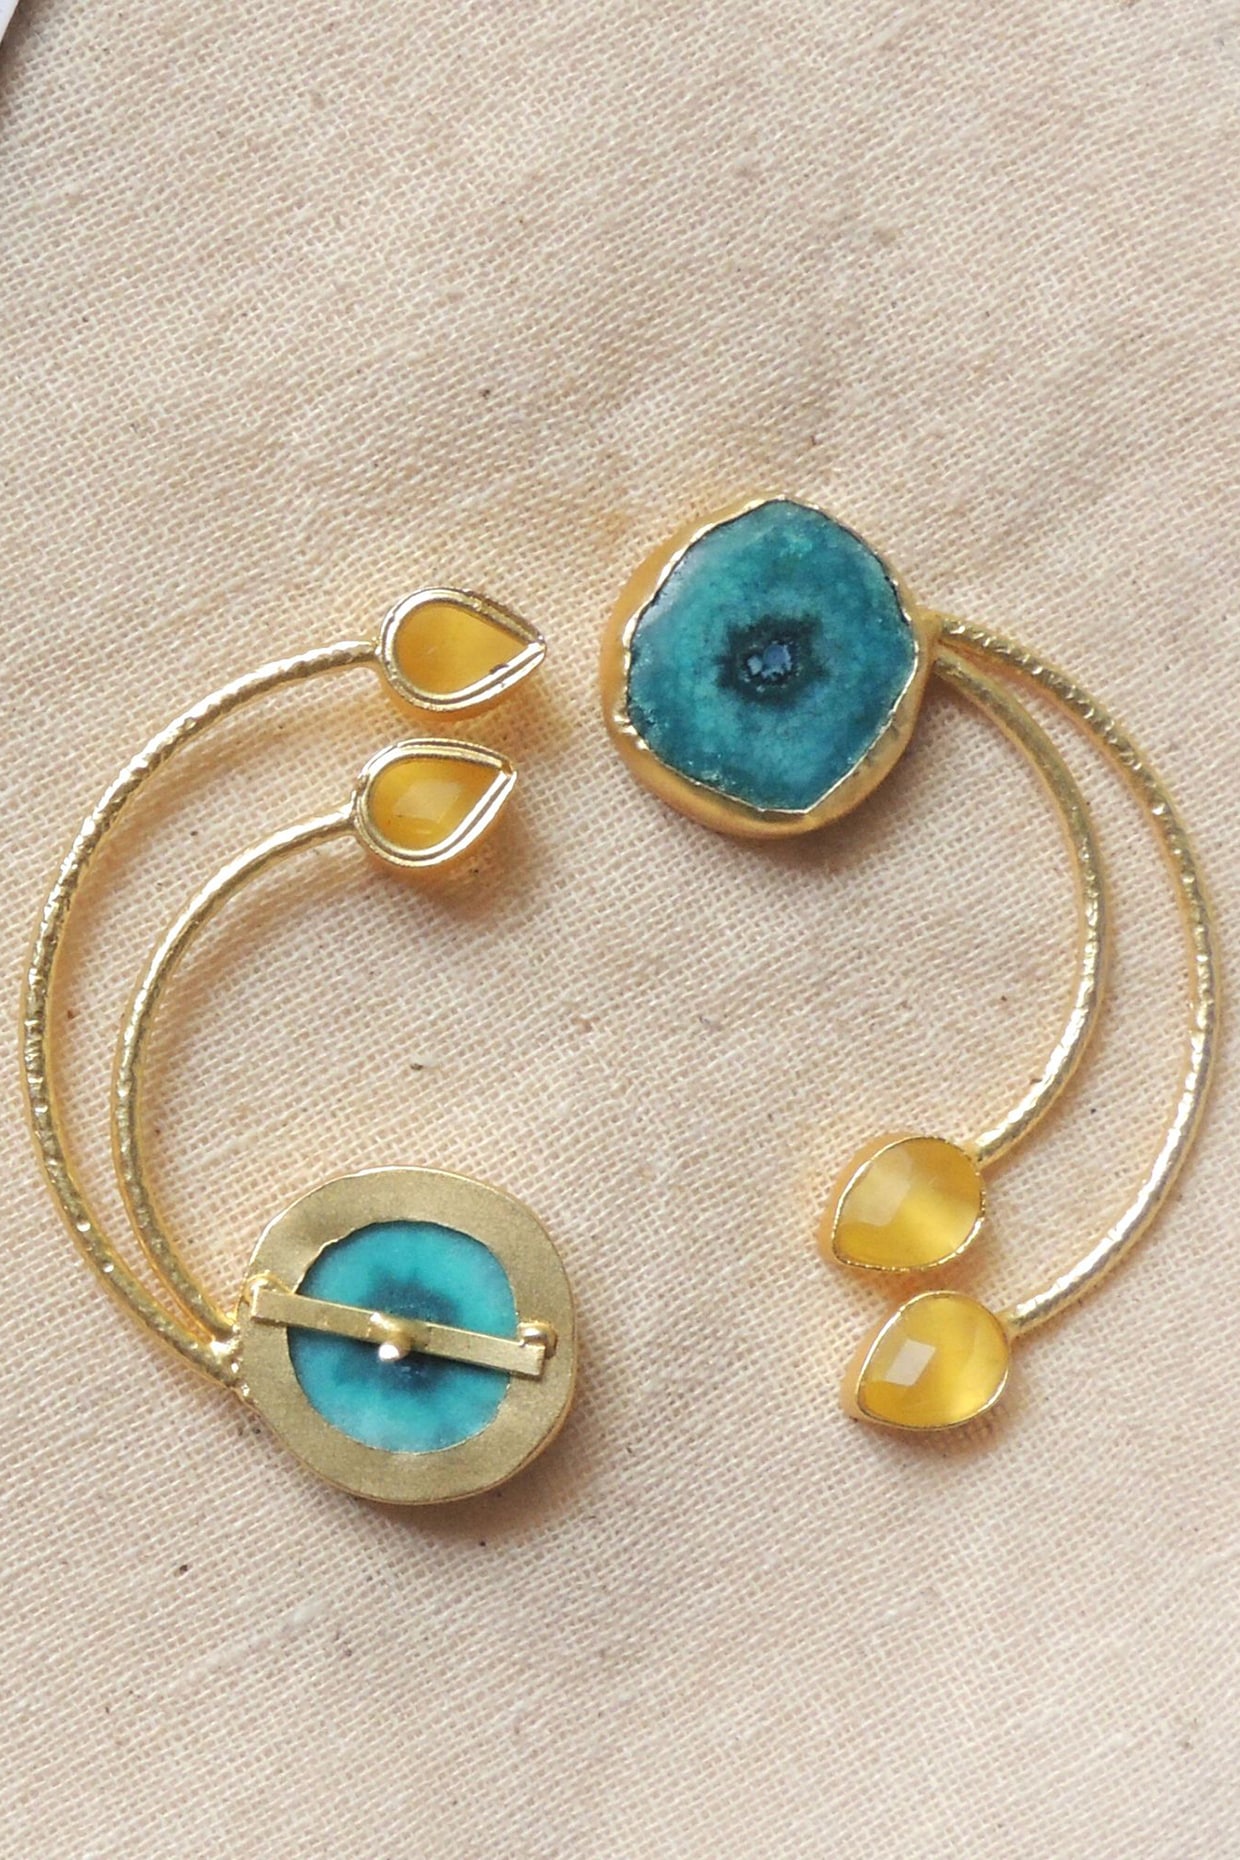 Blue Green Jasper Earrings, Rainbow Stone Jewelry, Imperial Jasper  Jewellery, Natural Stone Earrings, Stone Teardrops, Earrings for Women -  Etsy